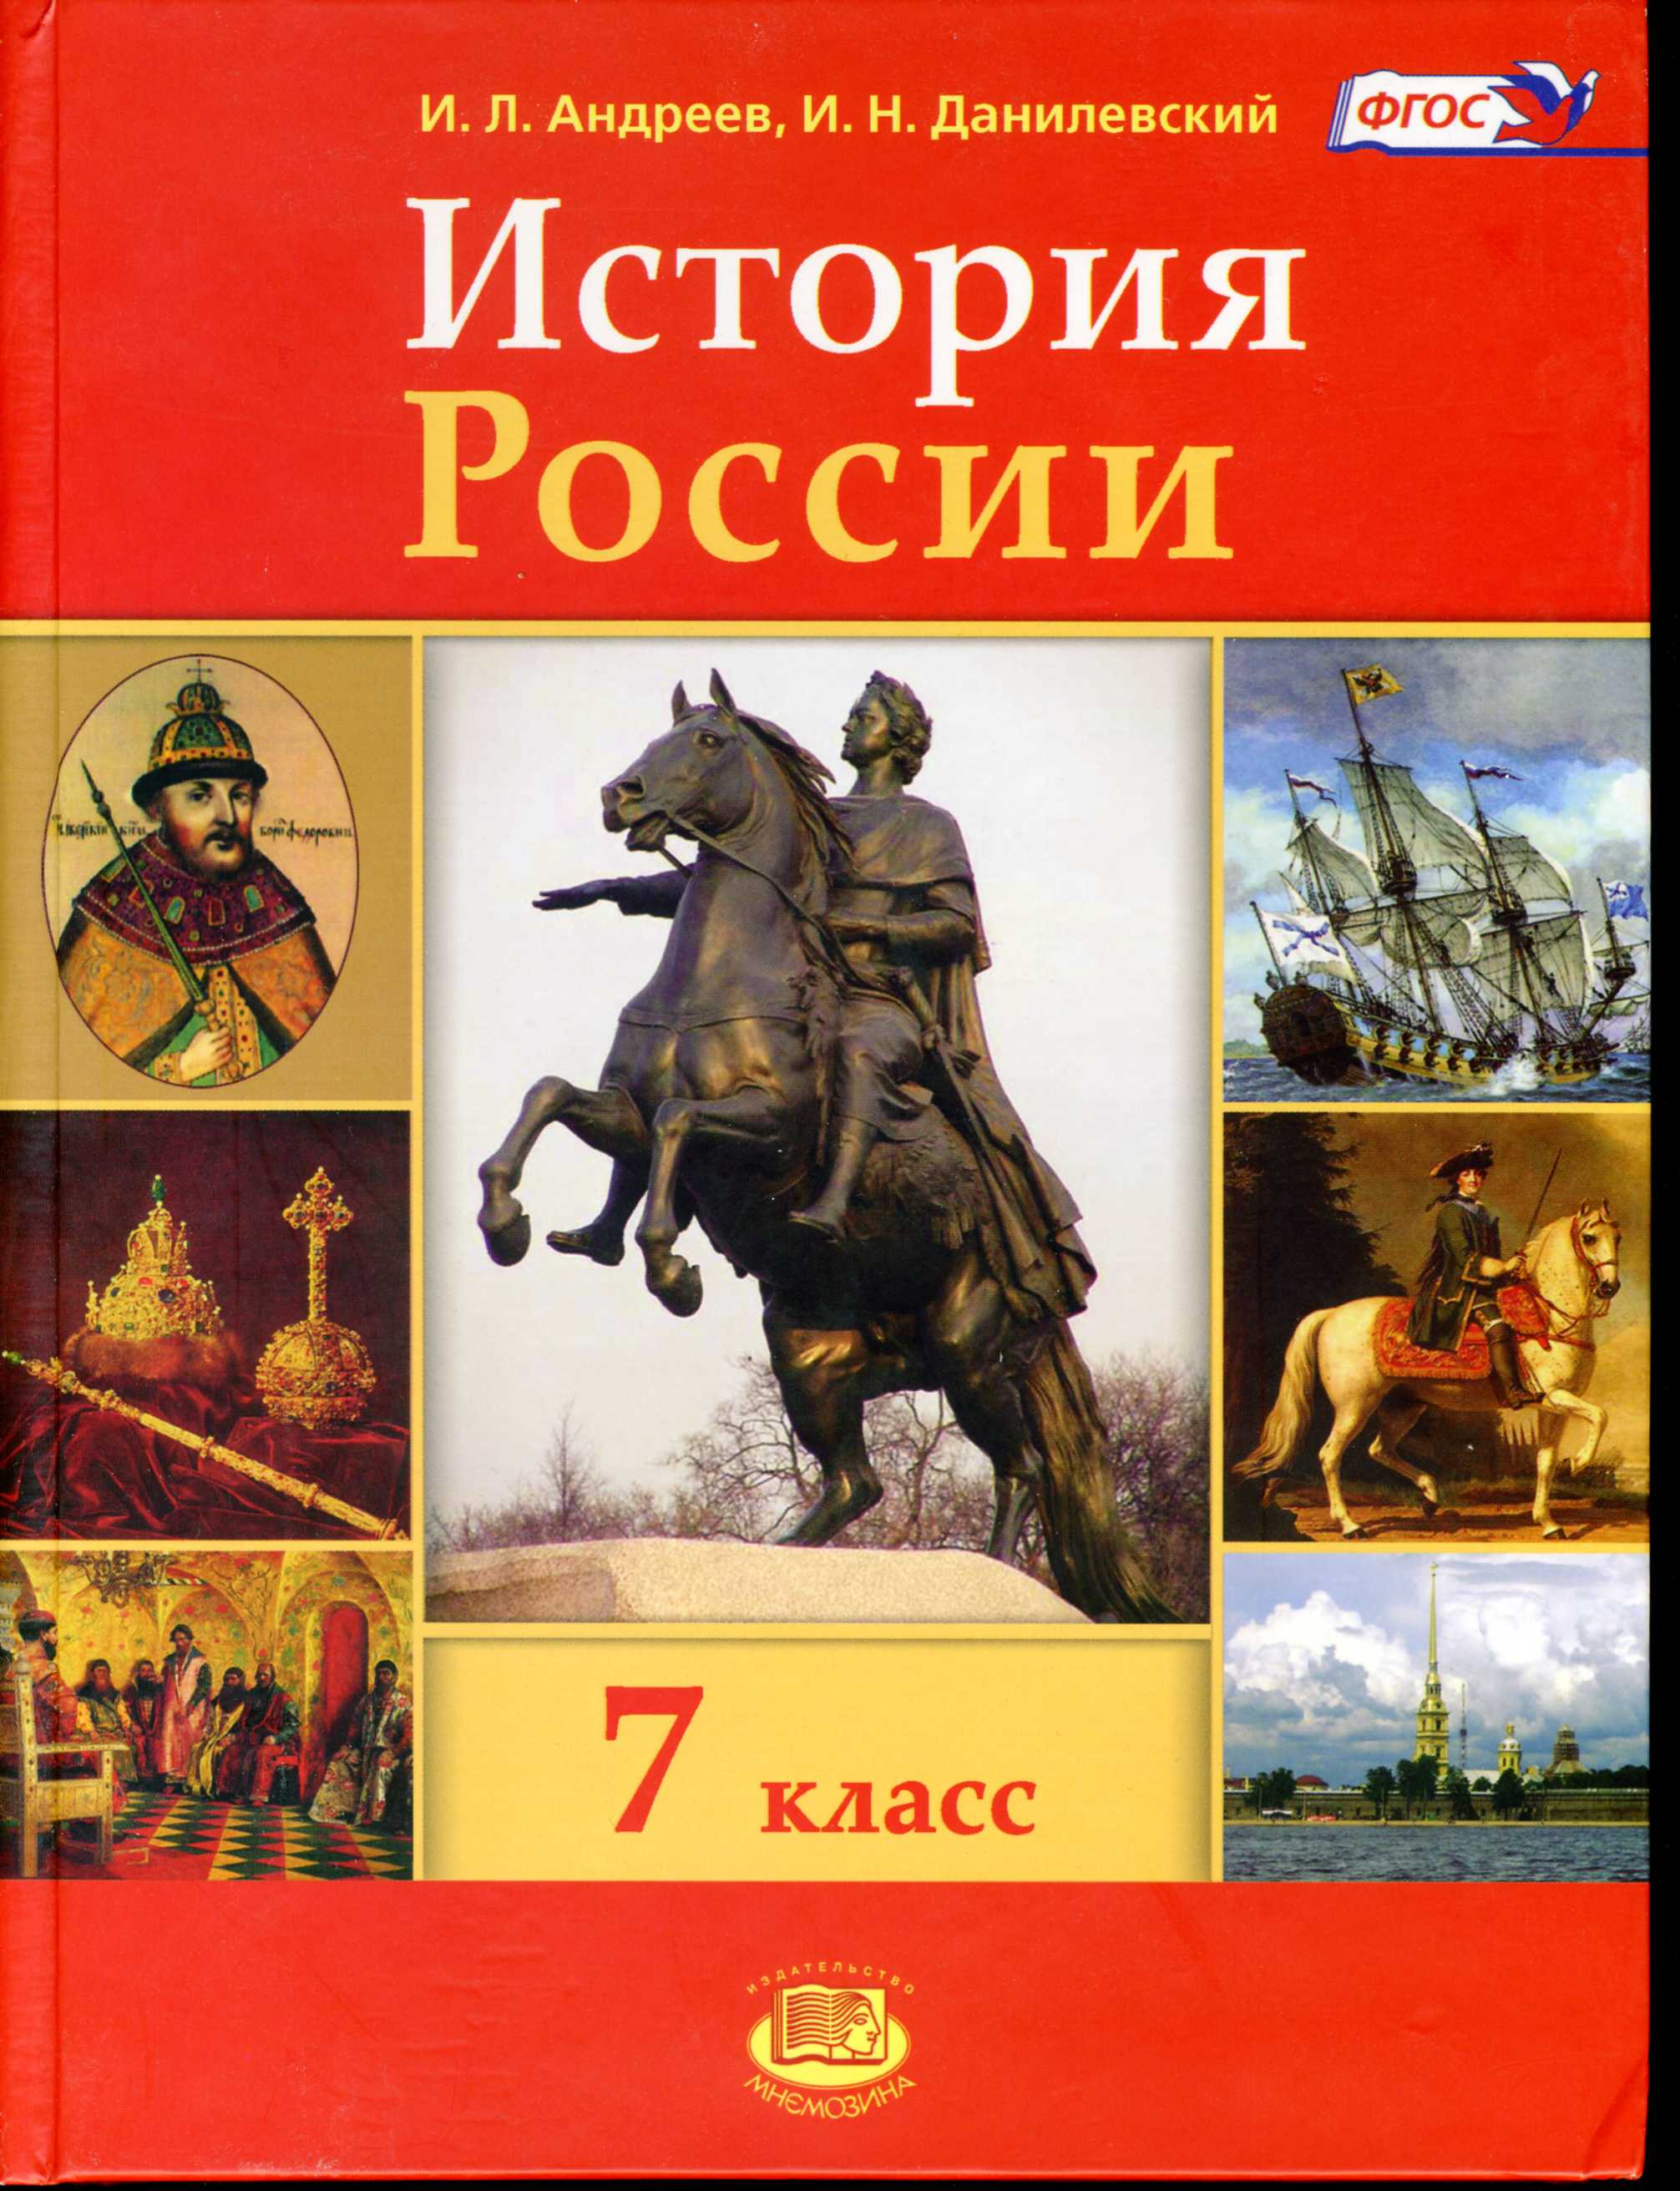 Учебник истории россии 7 класс pdf